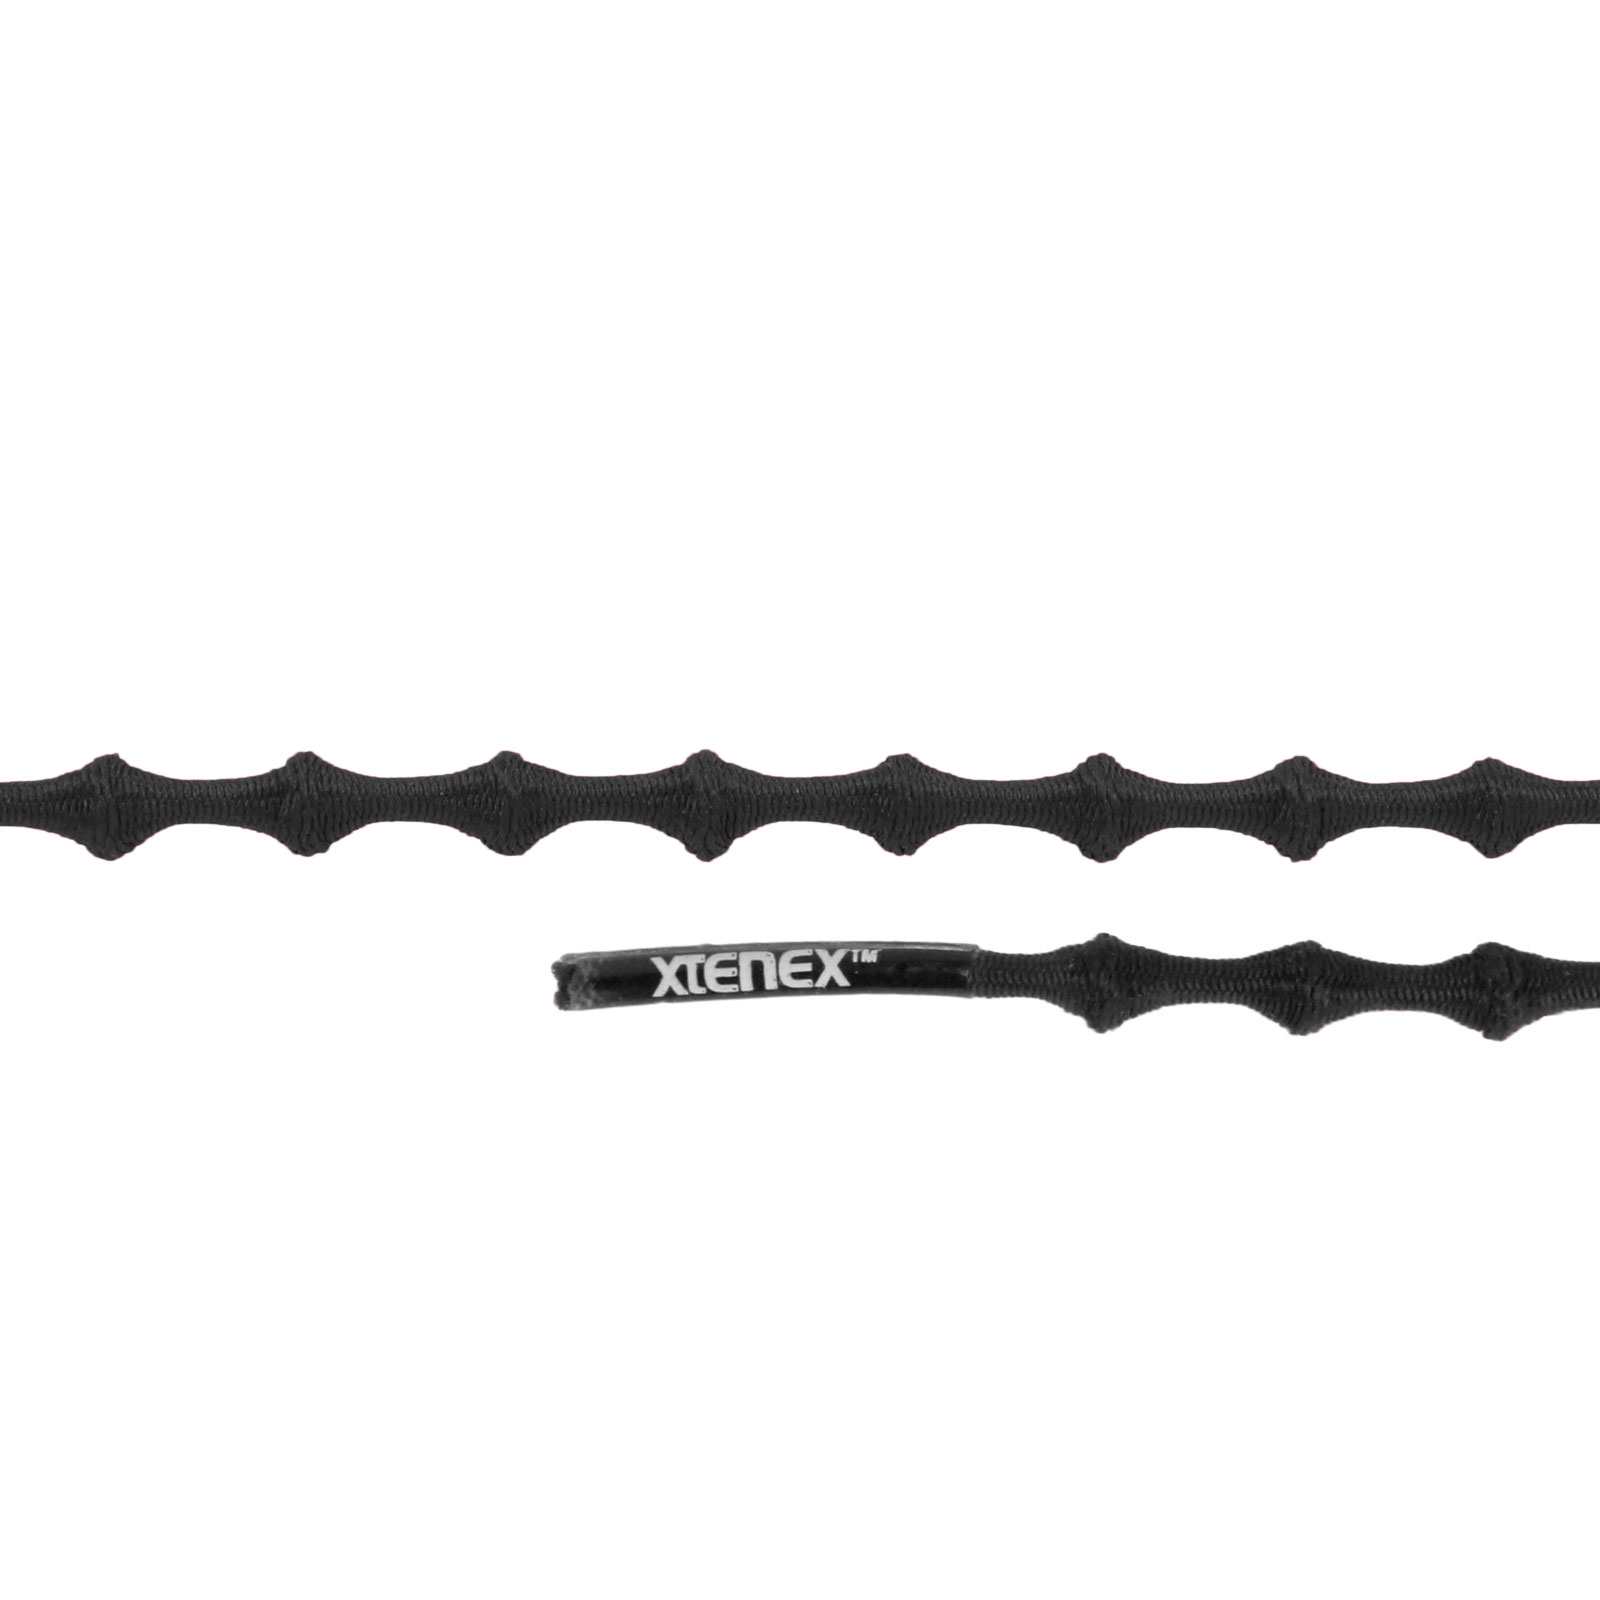 Produktbild von Xtenex Kids Schnürsenkel - 50cm - schwarz